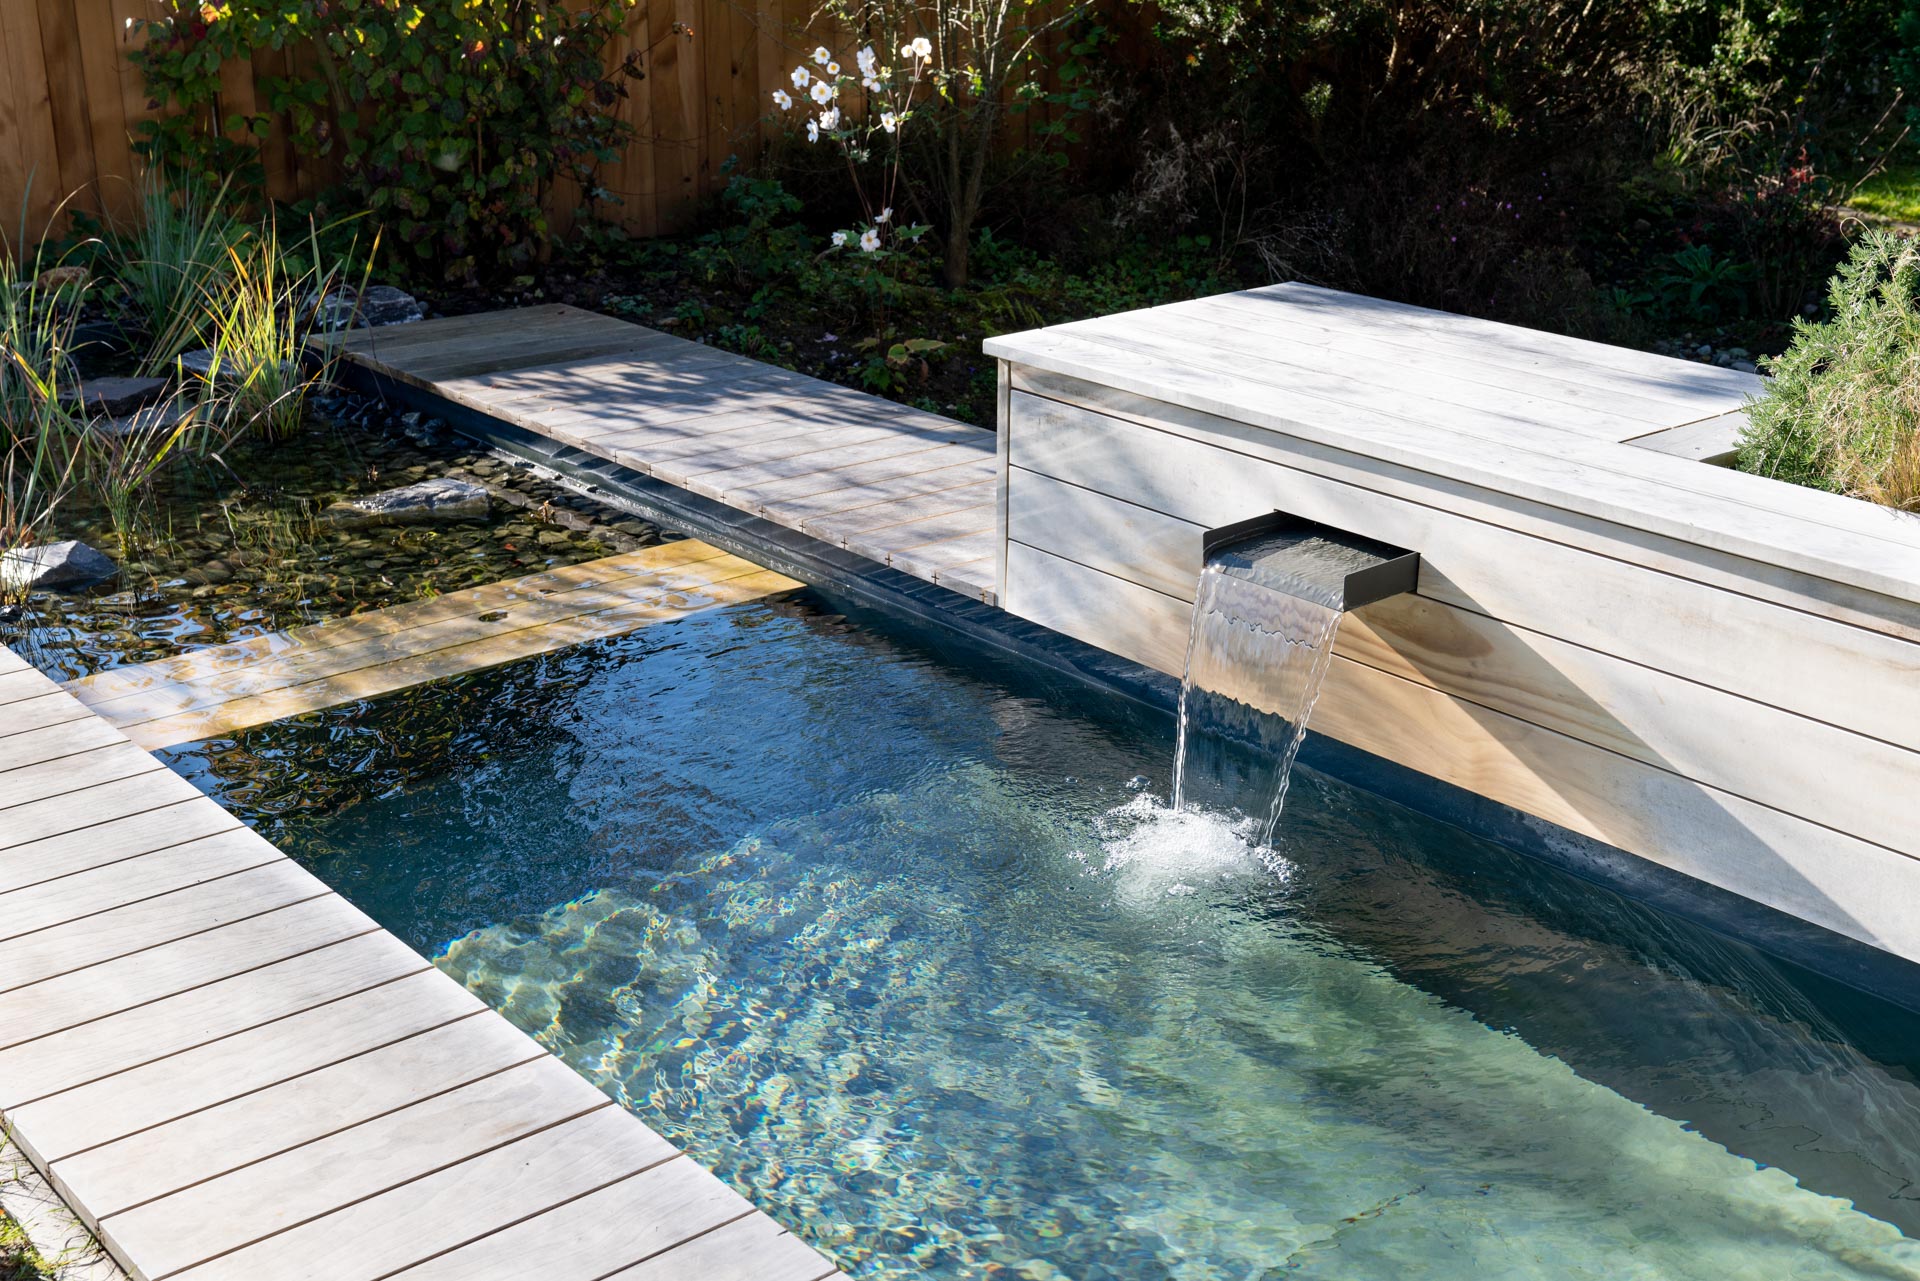 Badebrunnen: Ein Brunnen im Garten, der zur Erfrischung an heissen Tagen dient.